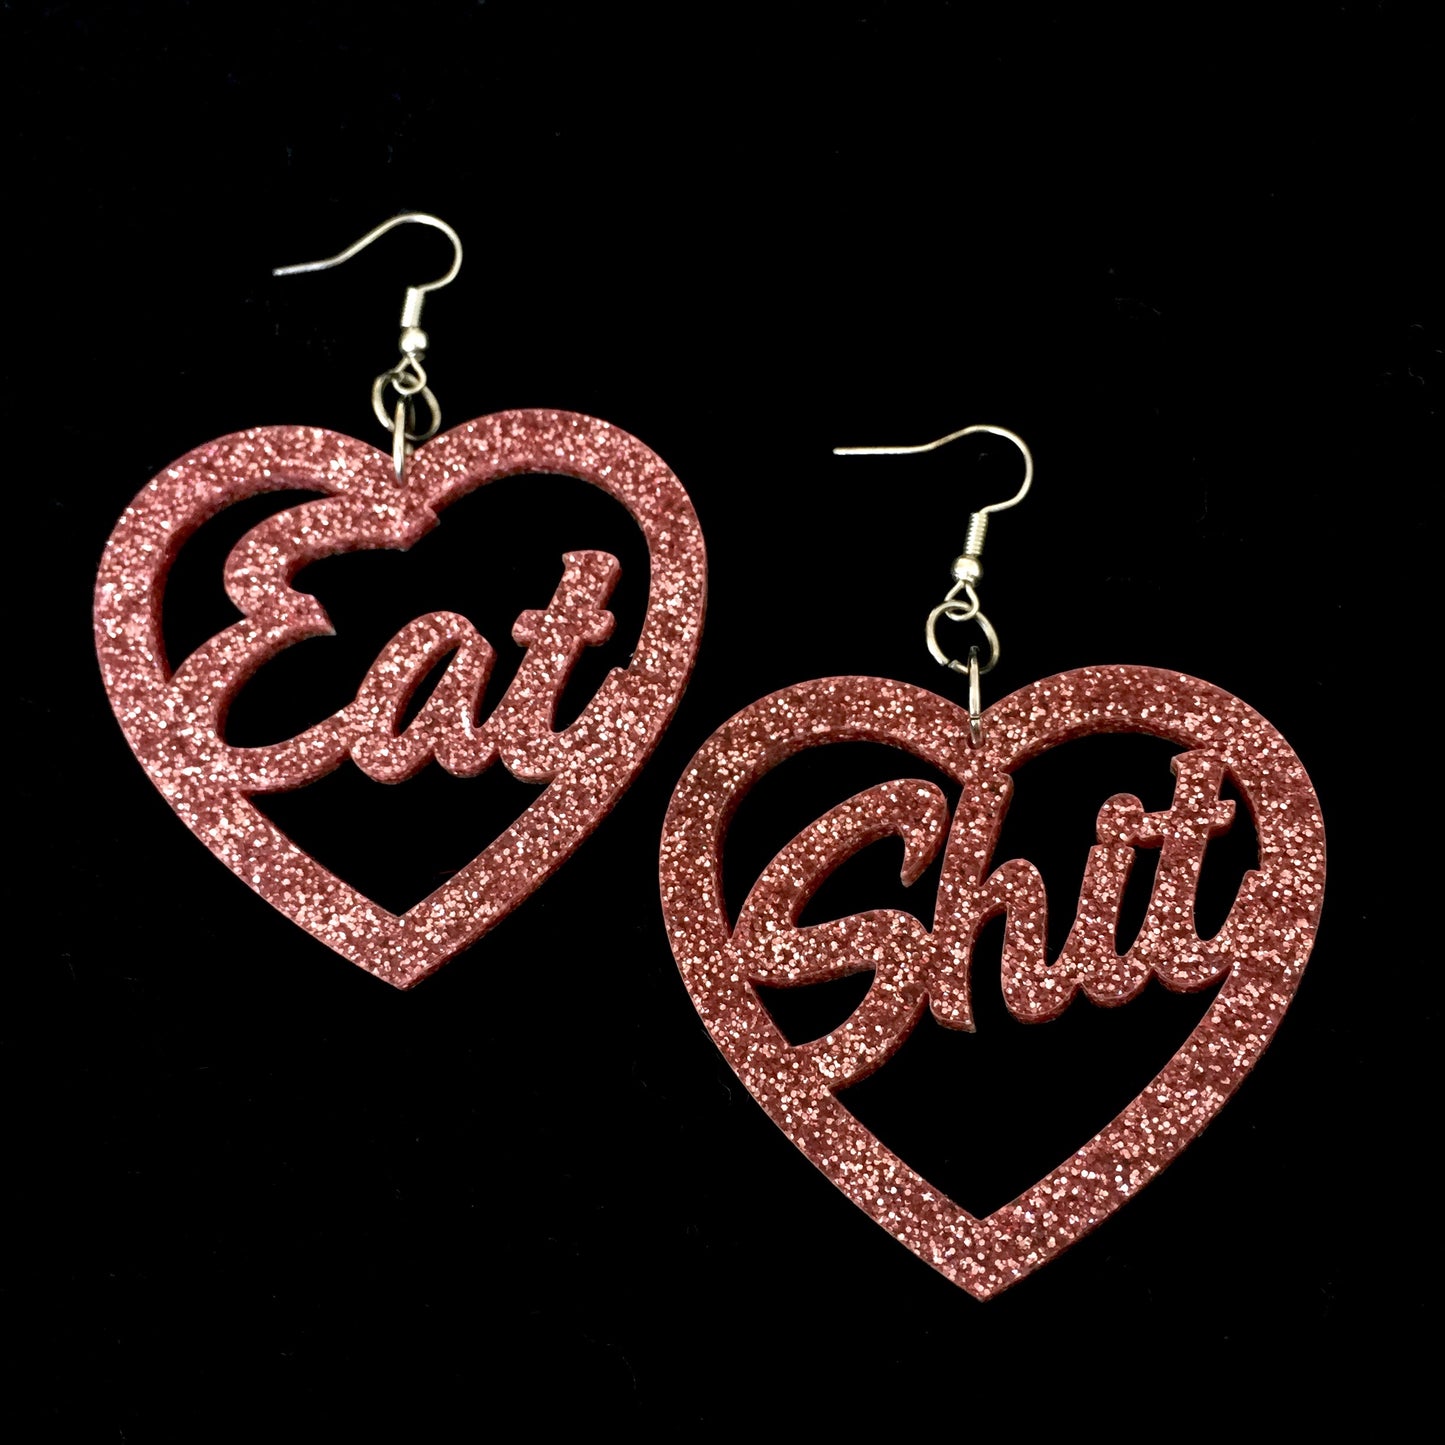 Eat Shit Earrings